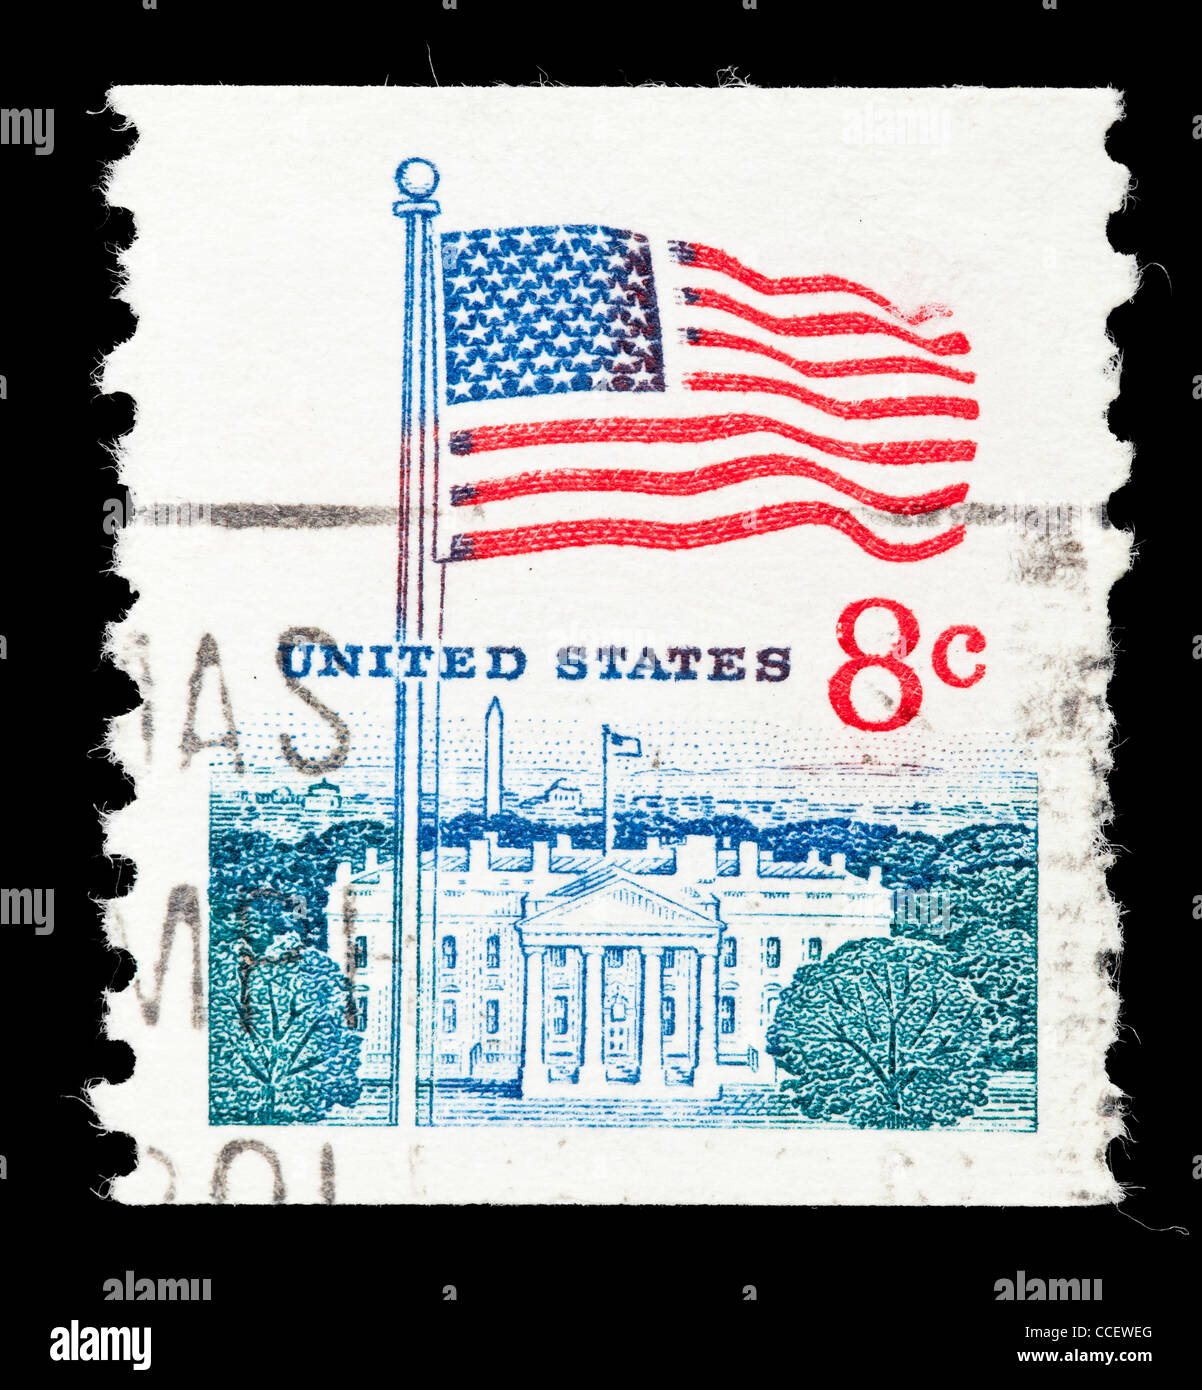 Usa white house stamp immagini e fotografie stock ad alta risoluzione -  Alamy